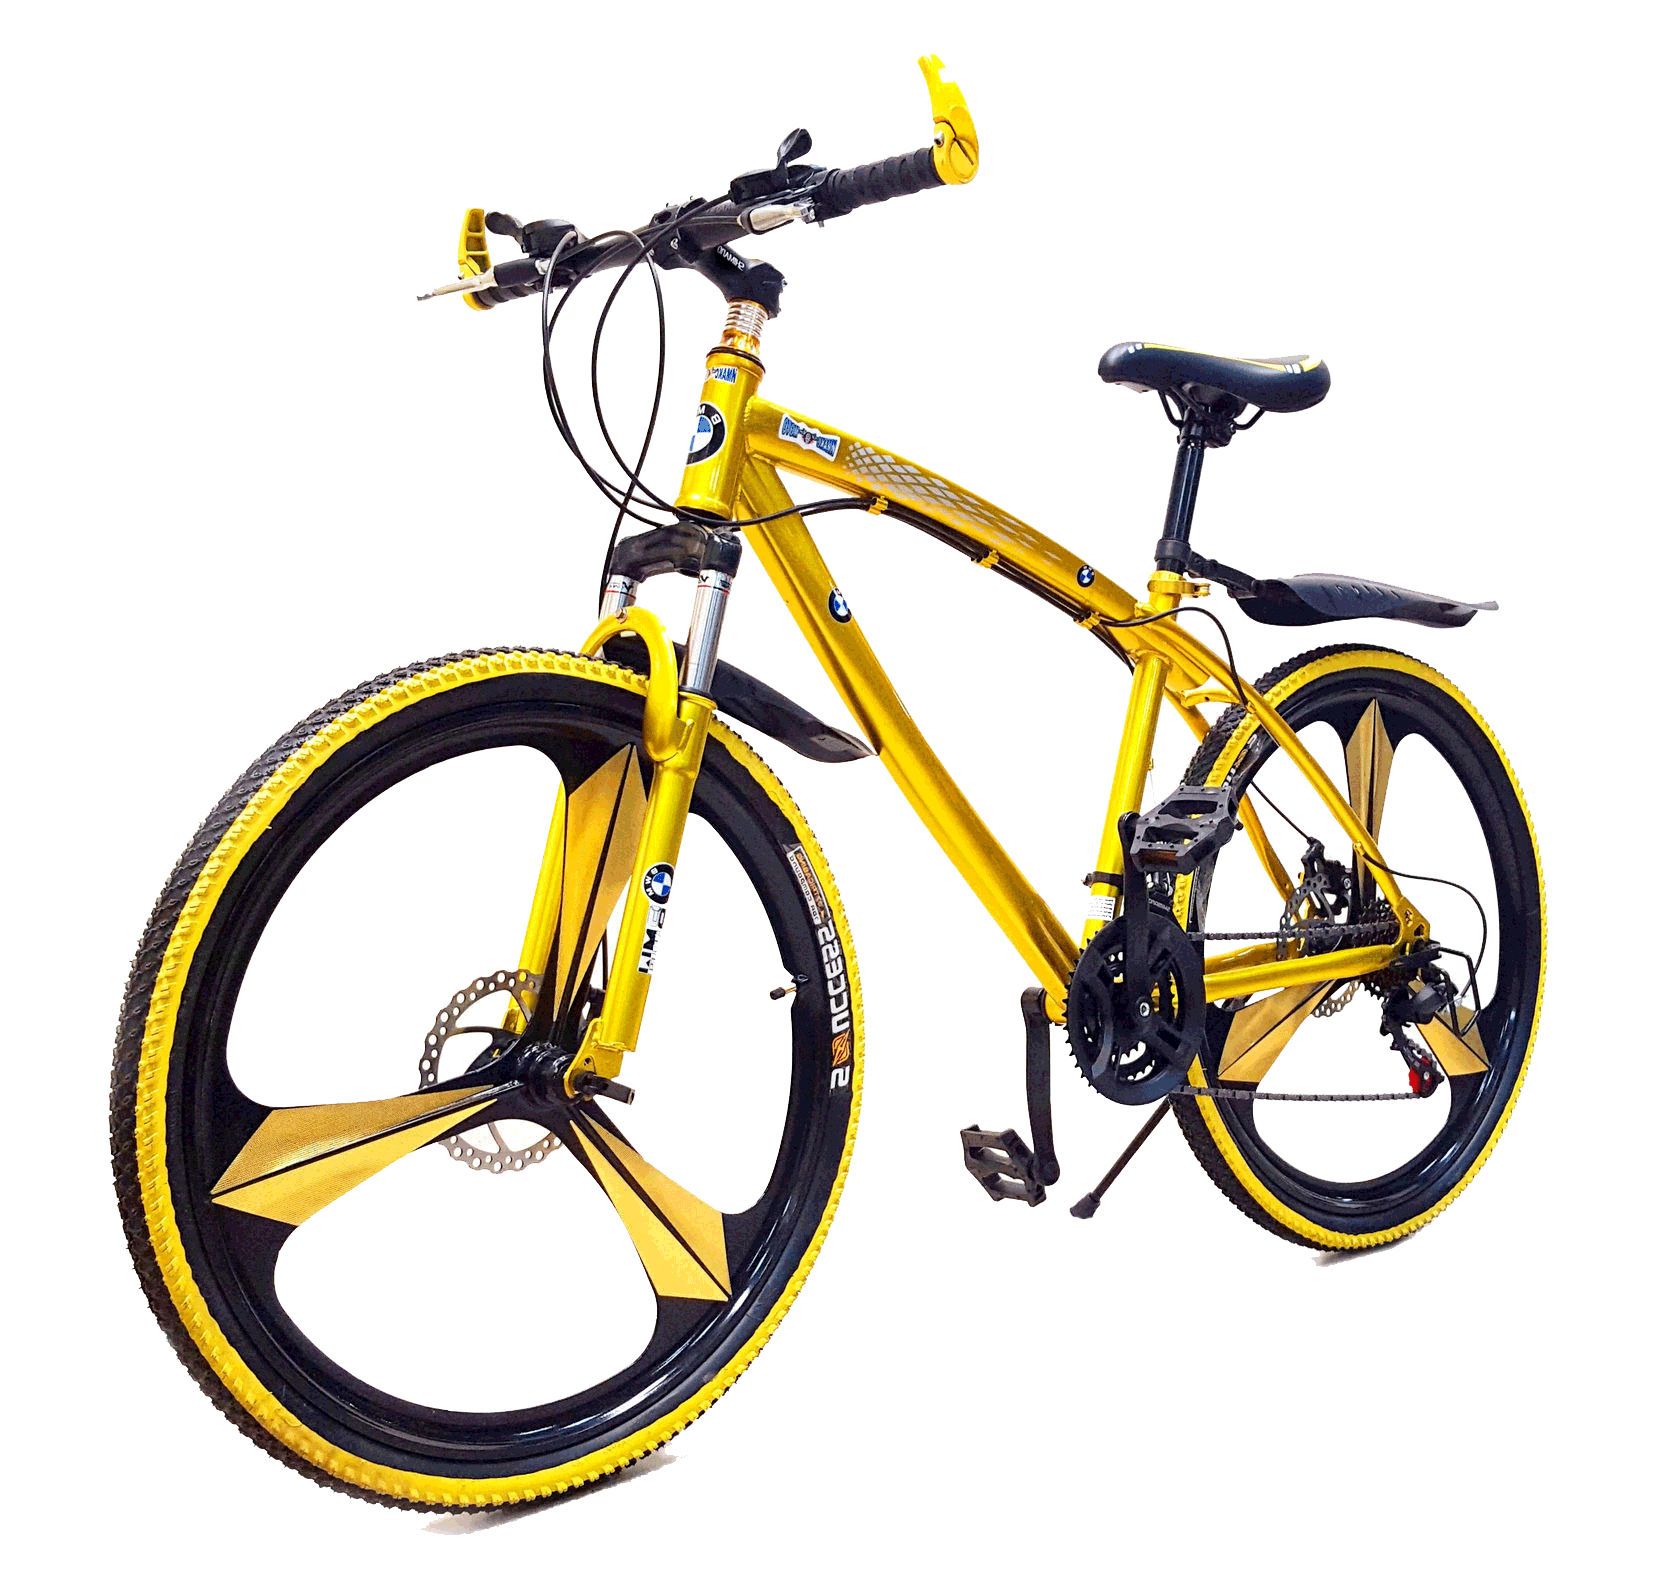 Купить велосипед в алматы. Золотой велосипед БМВ. Велосипед БМВ 24 колёса. Горный велосипед БМВ. Велосипед БМВ 26.